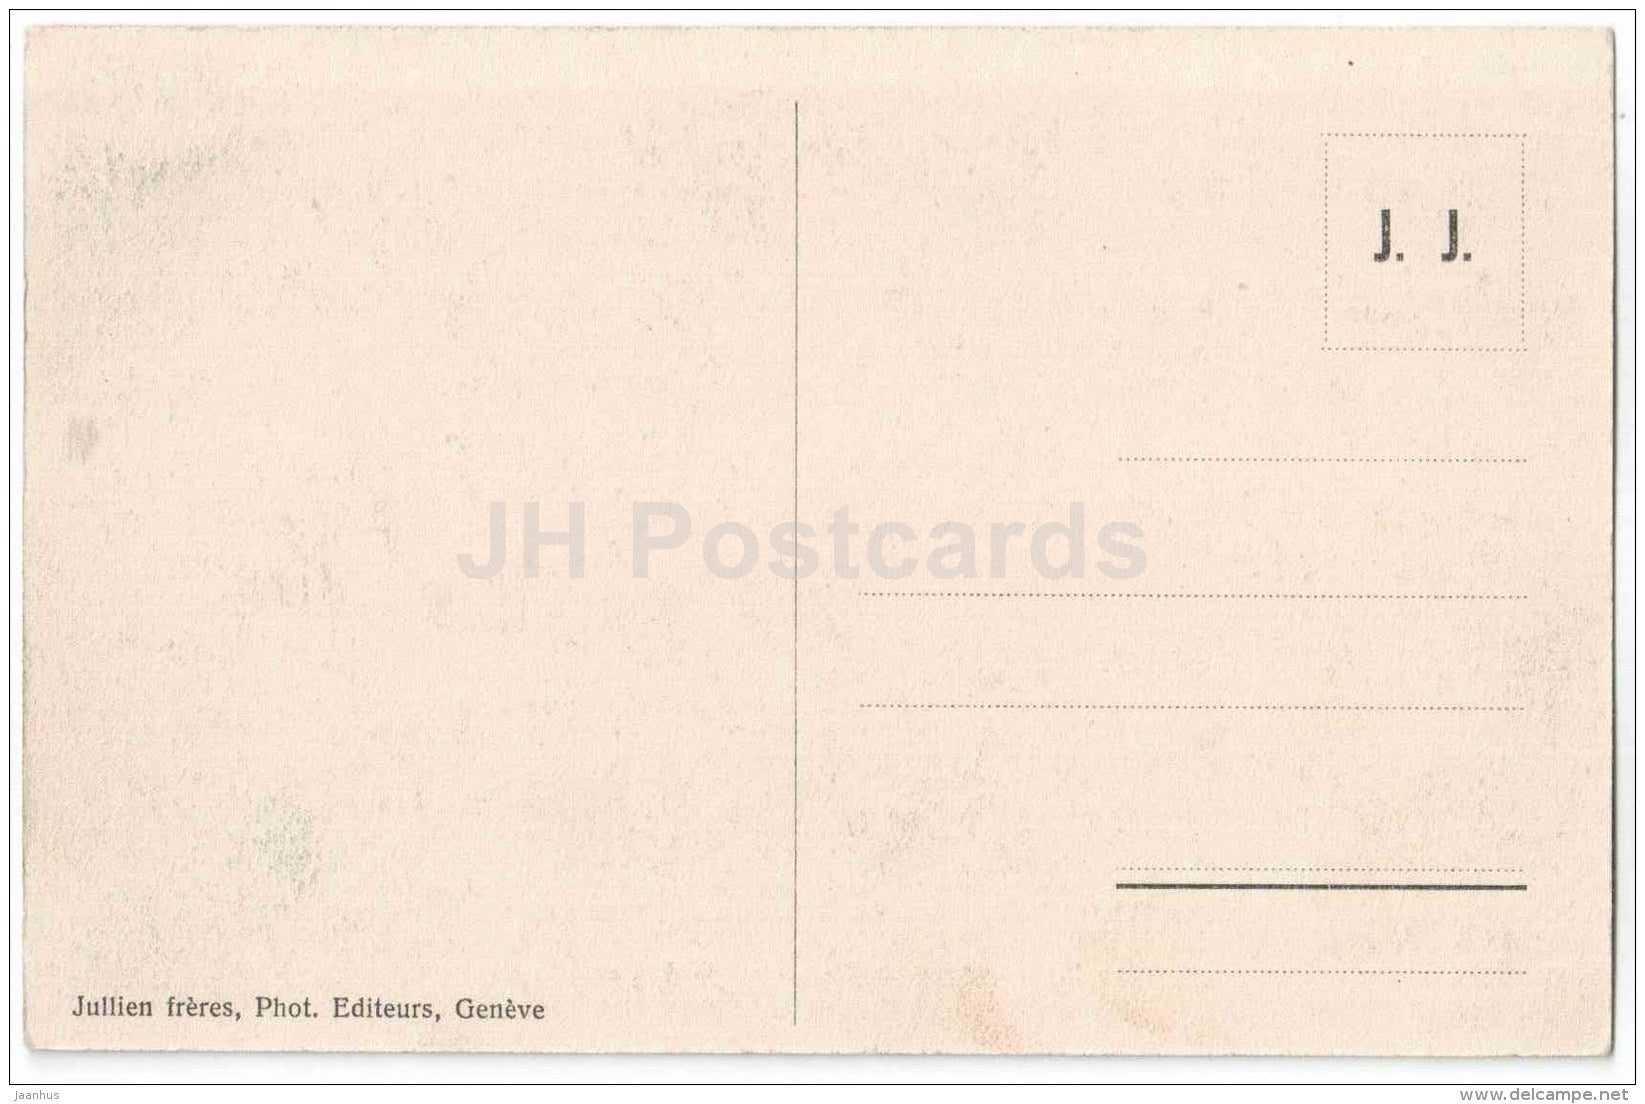 Chateau de Chillon - Le Corps de Garde - cannon - castle - J. J. 7925 - Switzerland - unused - JH Postcards